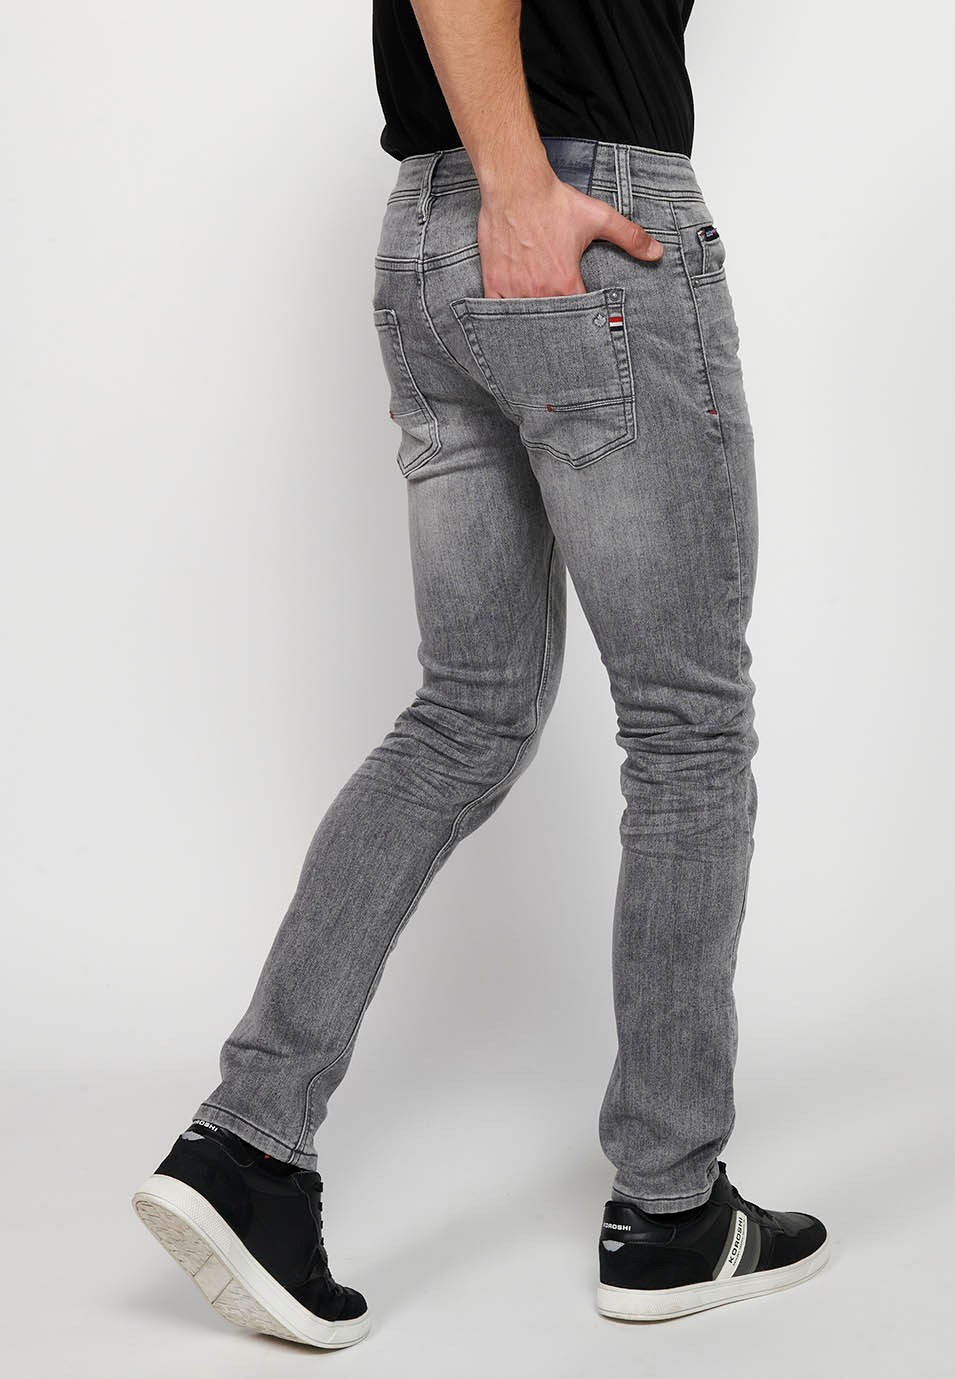 Pantalons llargs Jeans denim slim fit amb Cinc butxaques, un cereller de Color Denim Gris per a Home